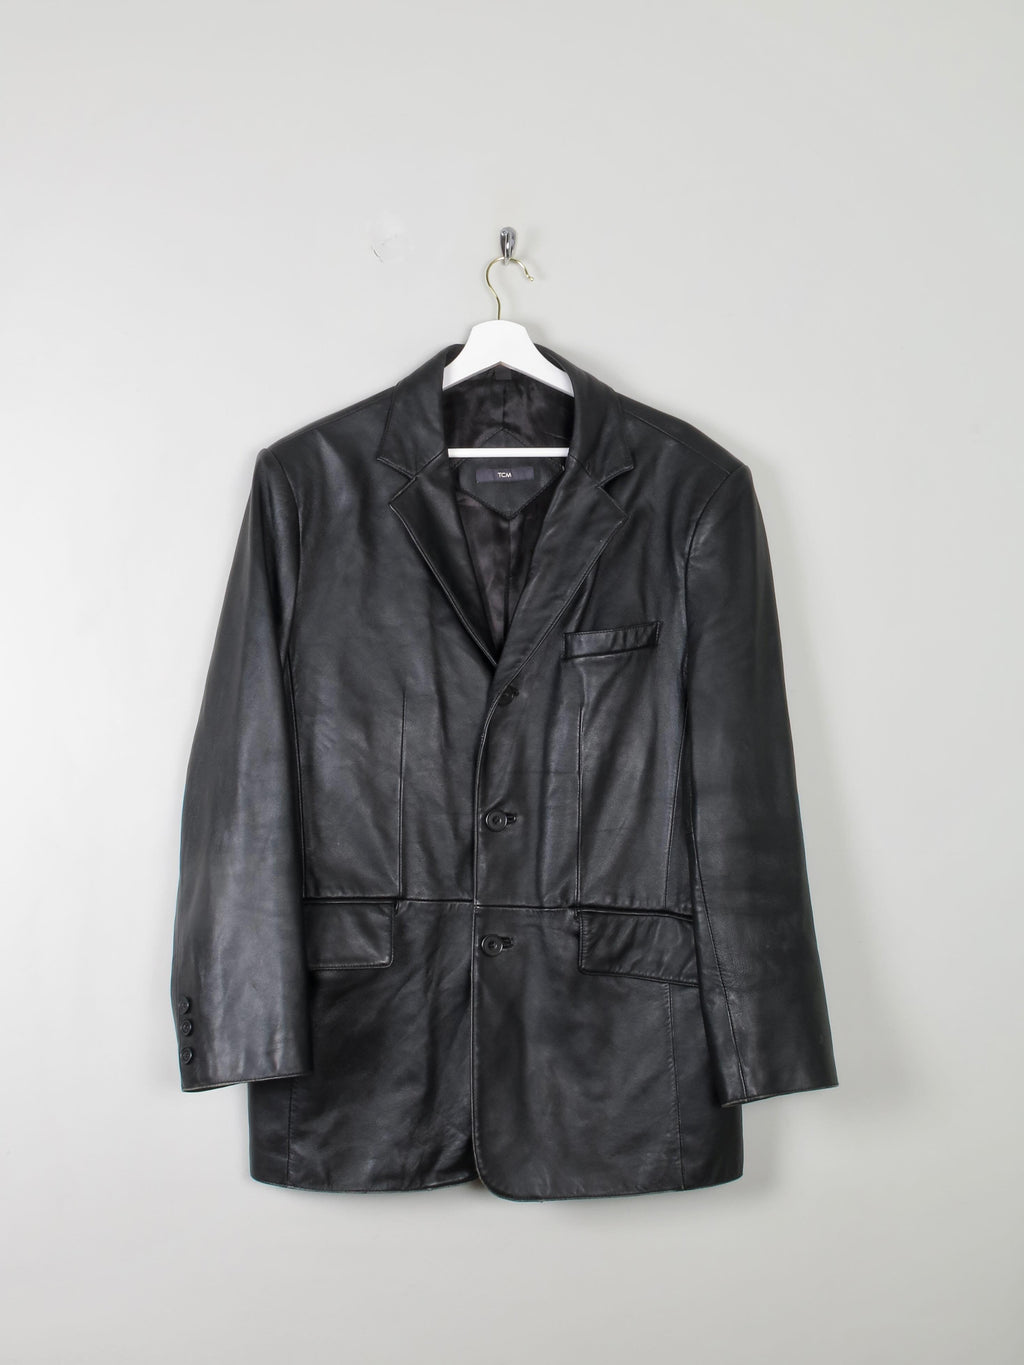 Men's Black Vintage Leather Jacket M Oversized - The Harlequin